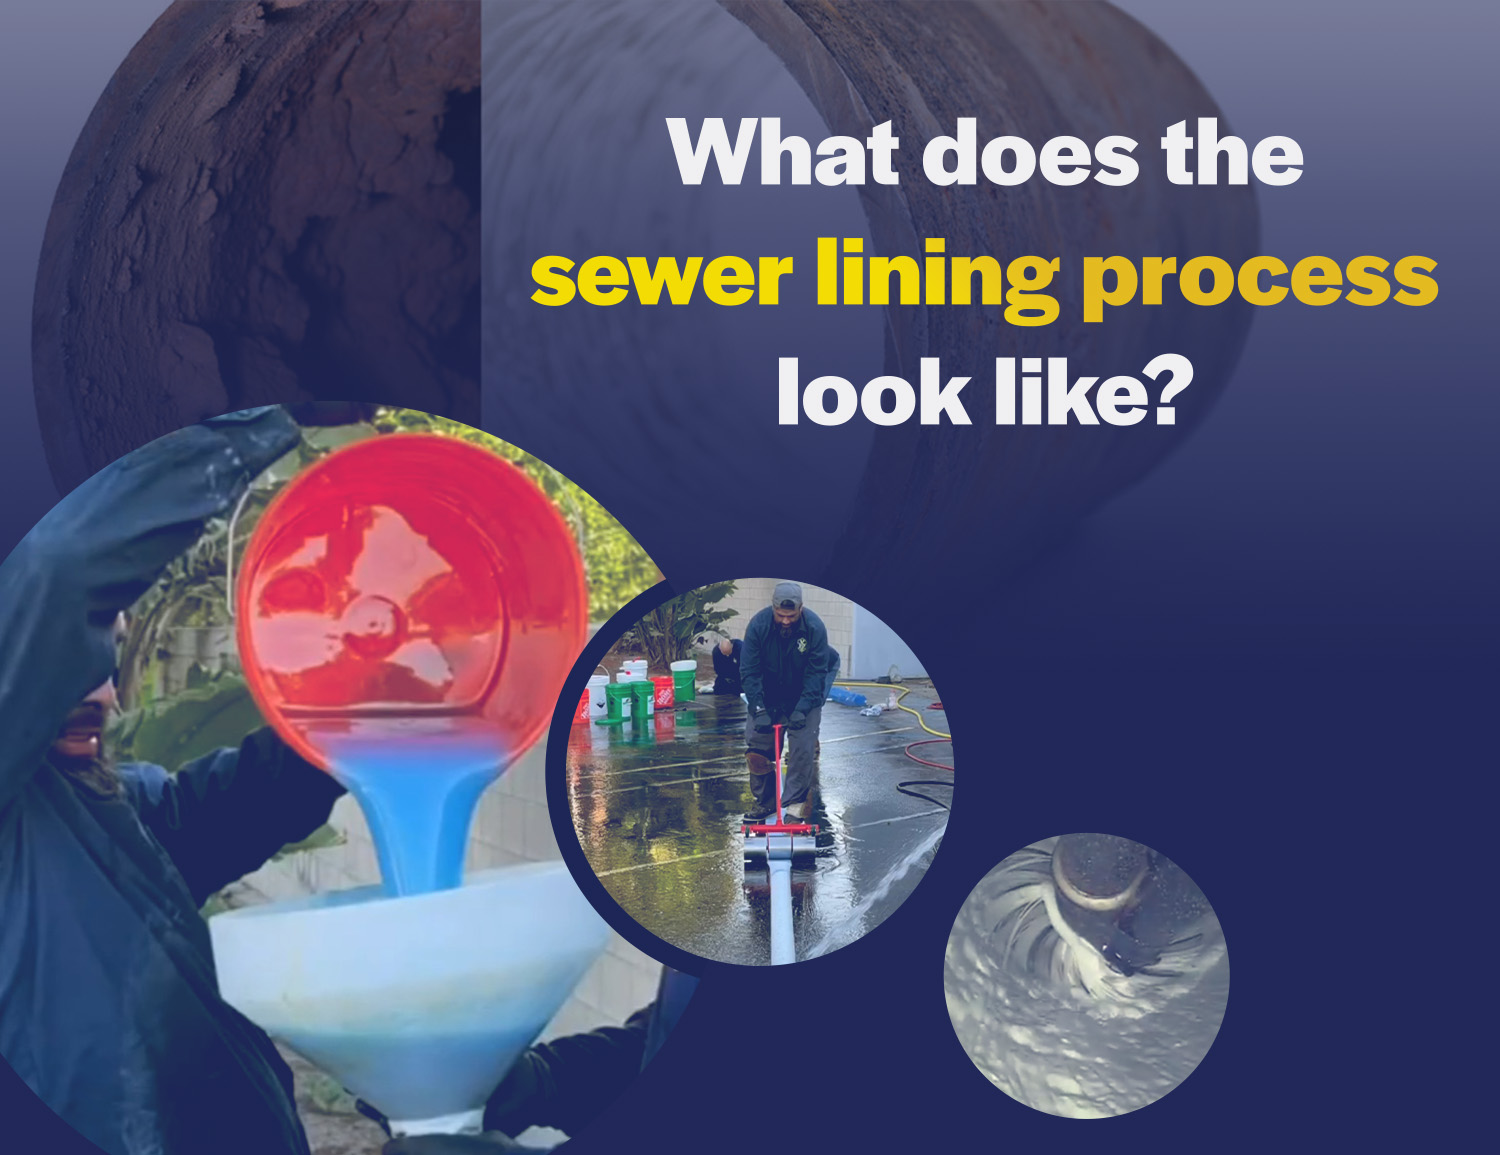 sewer lining process